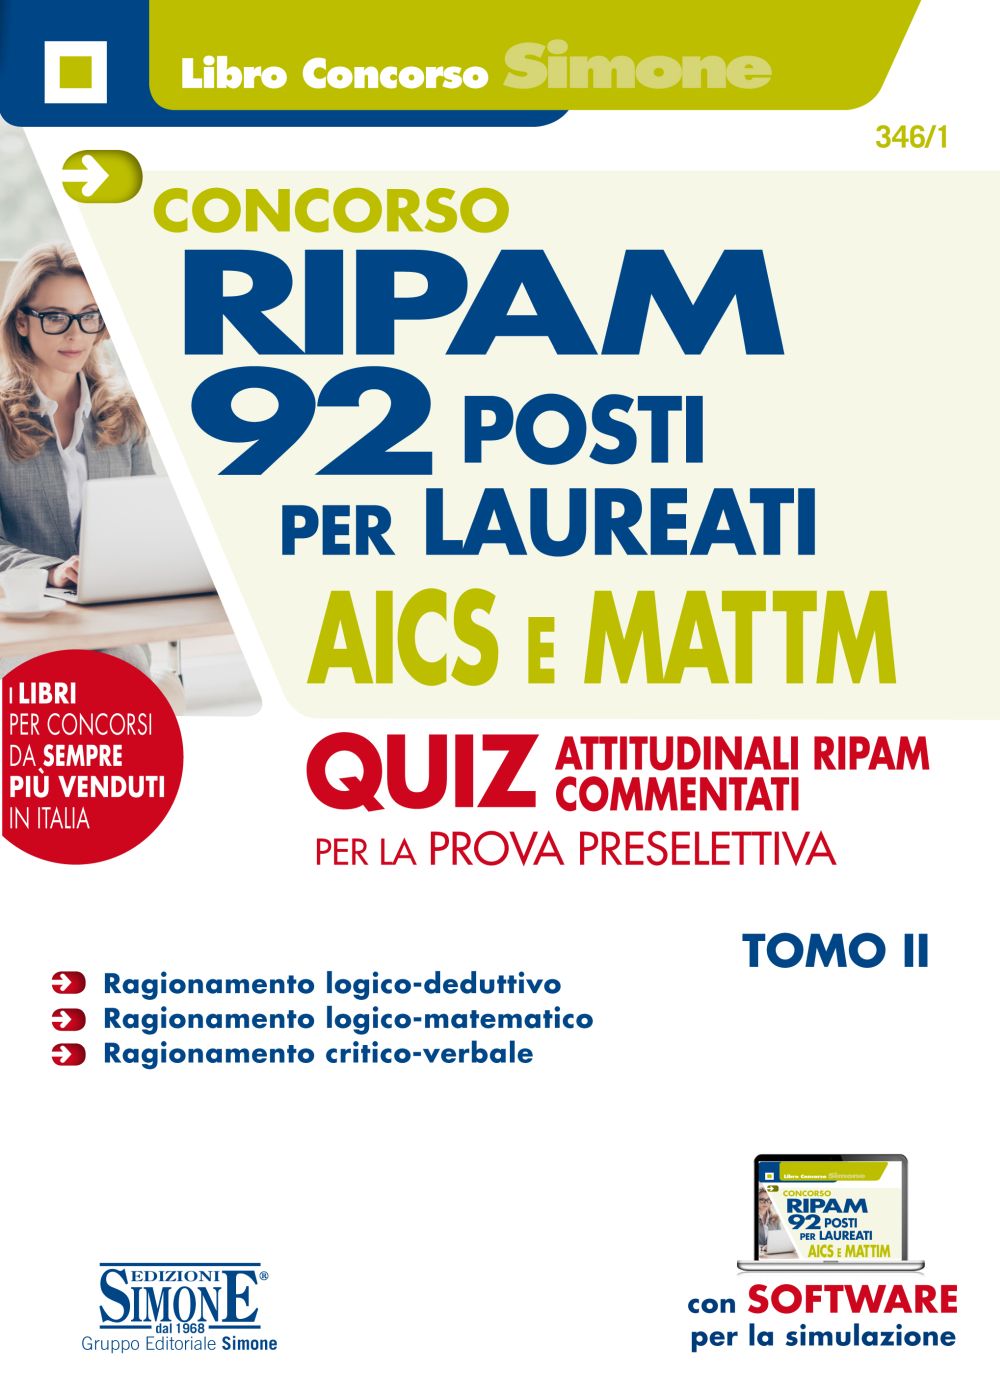 Concorso RIPAM - 92 posti per laureati AICS e MATTM - Quiz attitudinali RIPAM commentati - 346/1